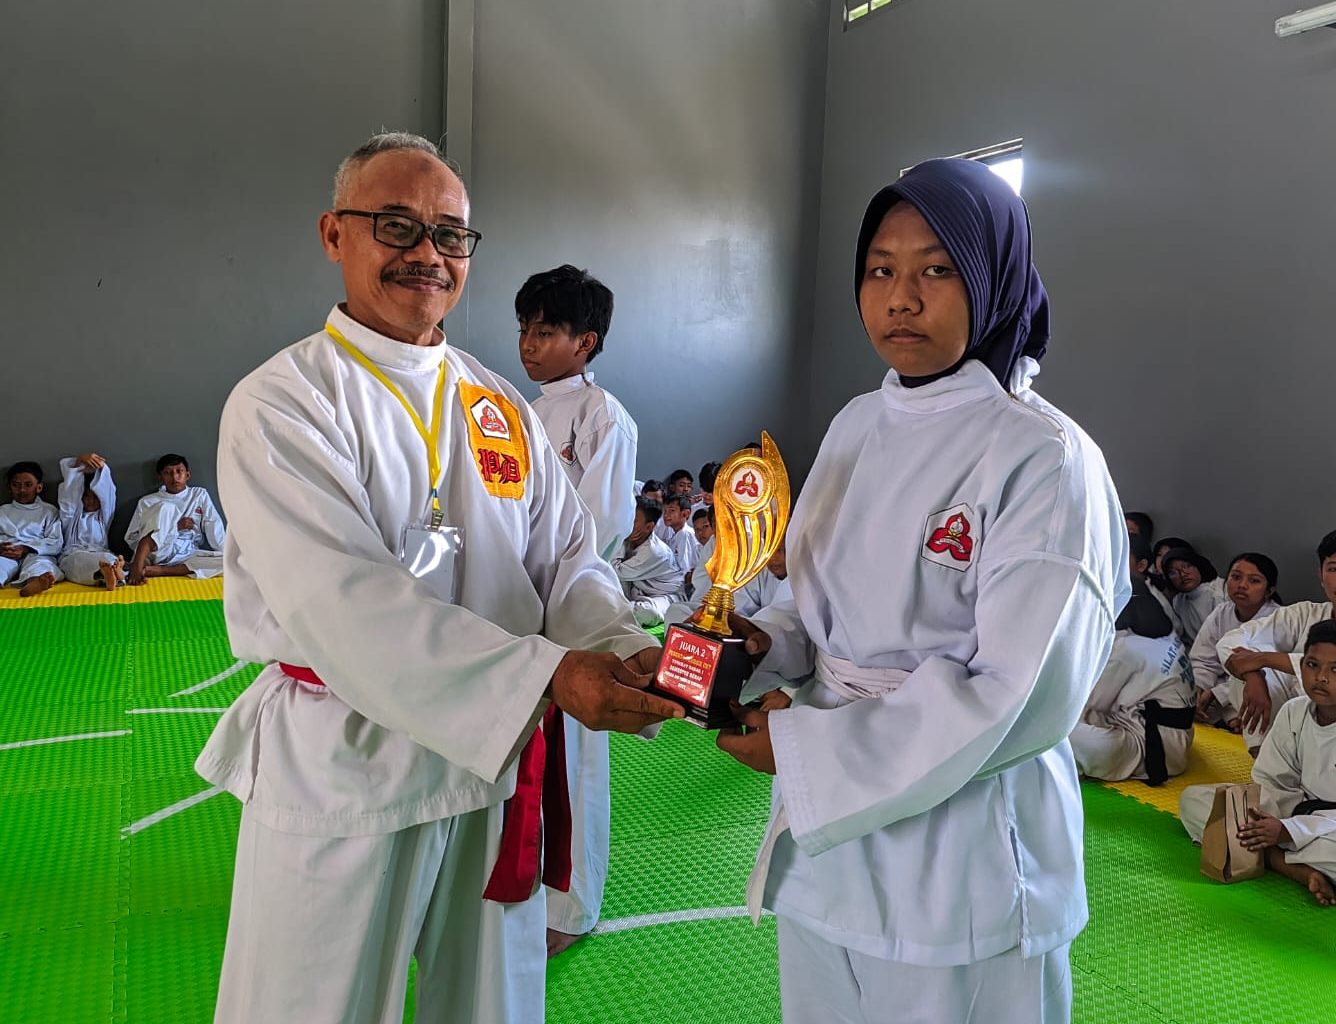 SMP PGRI 16 Sidoarjo Jawa Timur sukses Raih Prestasi Juara 1 dan 2 Tingkat Dasar Silat Perisasi Diri. Foto: Chomidah/Mas Andre Hariyanto (SUARA UTAMA)